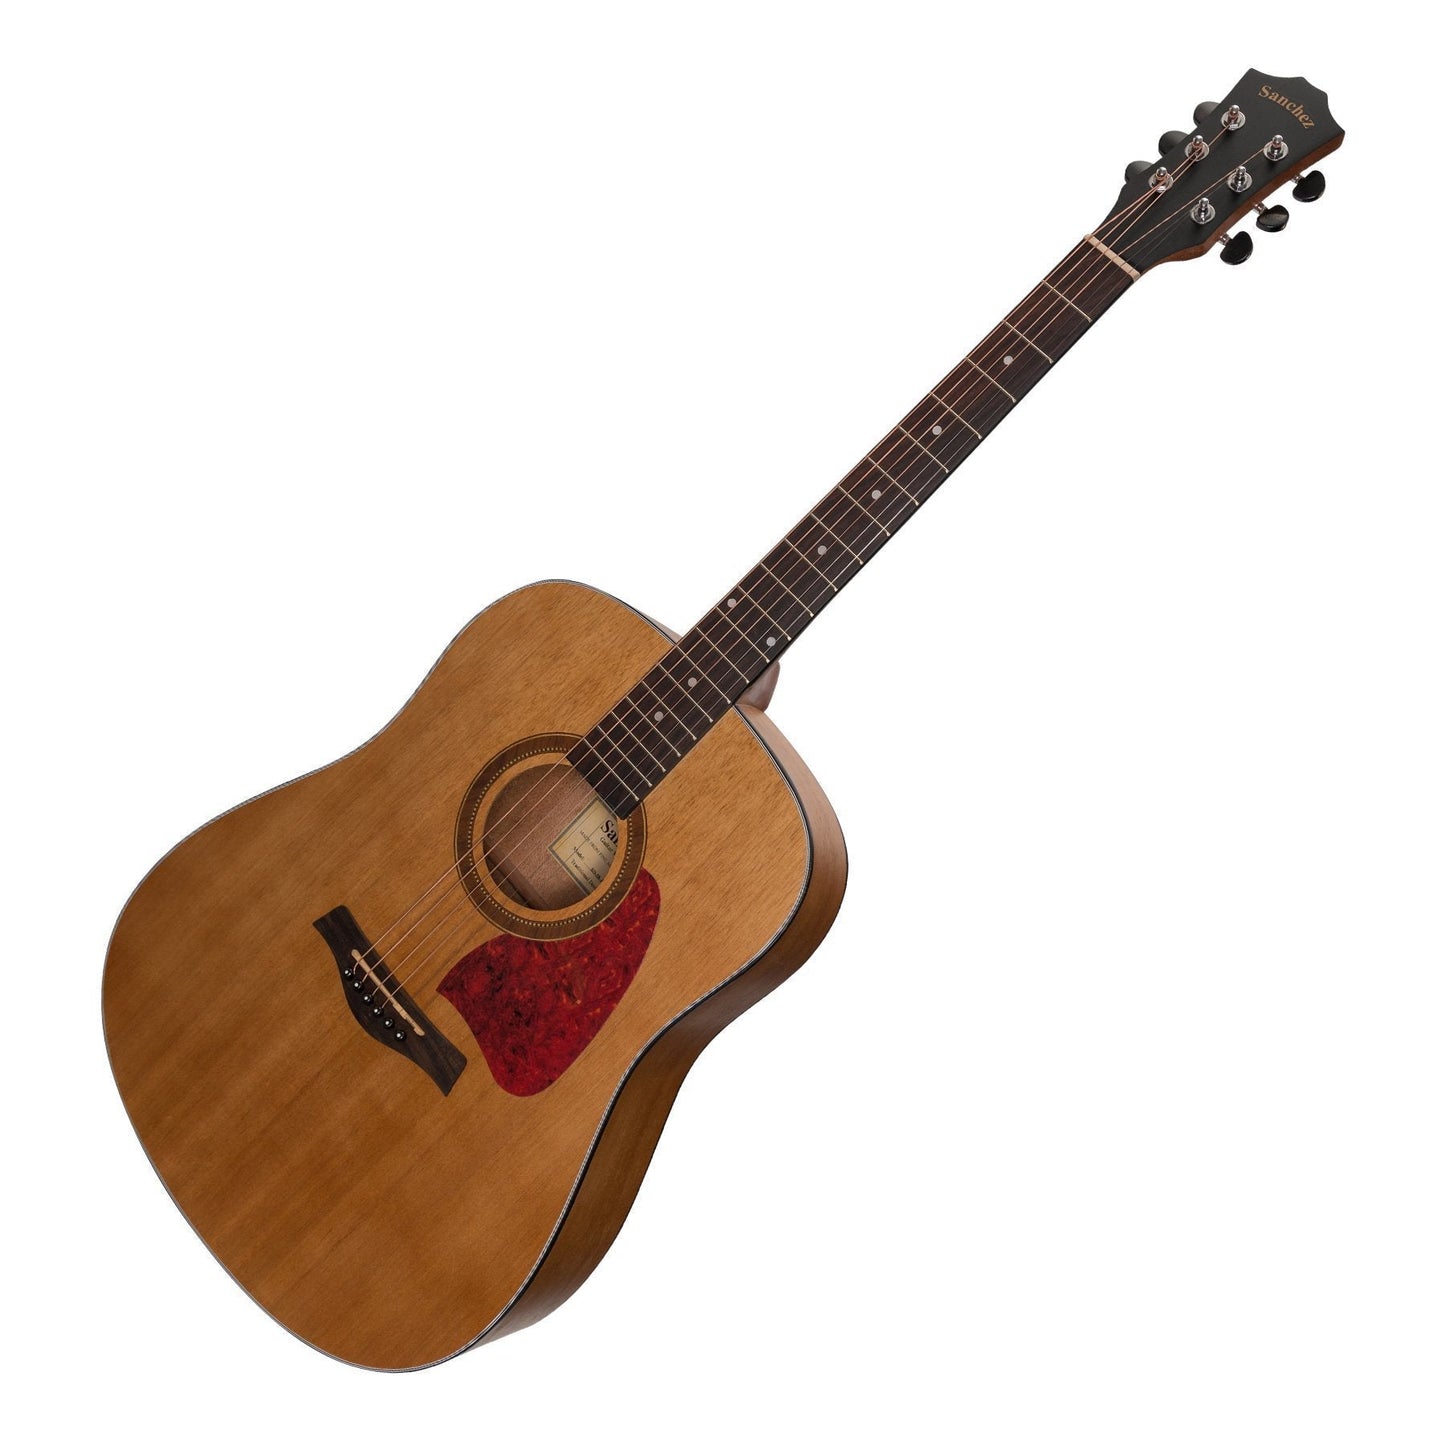 Sanchez Acoustic Dreadnought Guitar (Acacia)